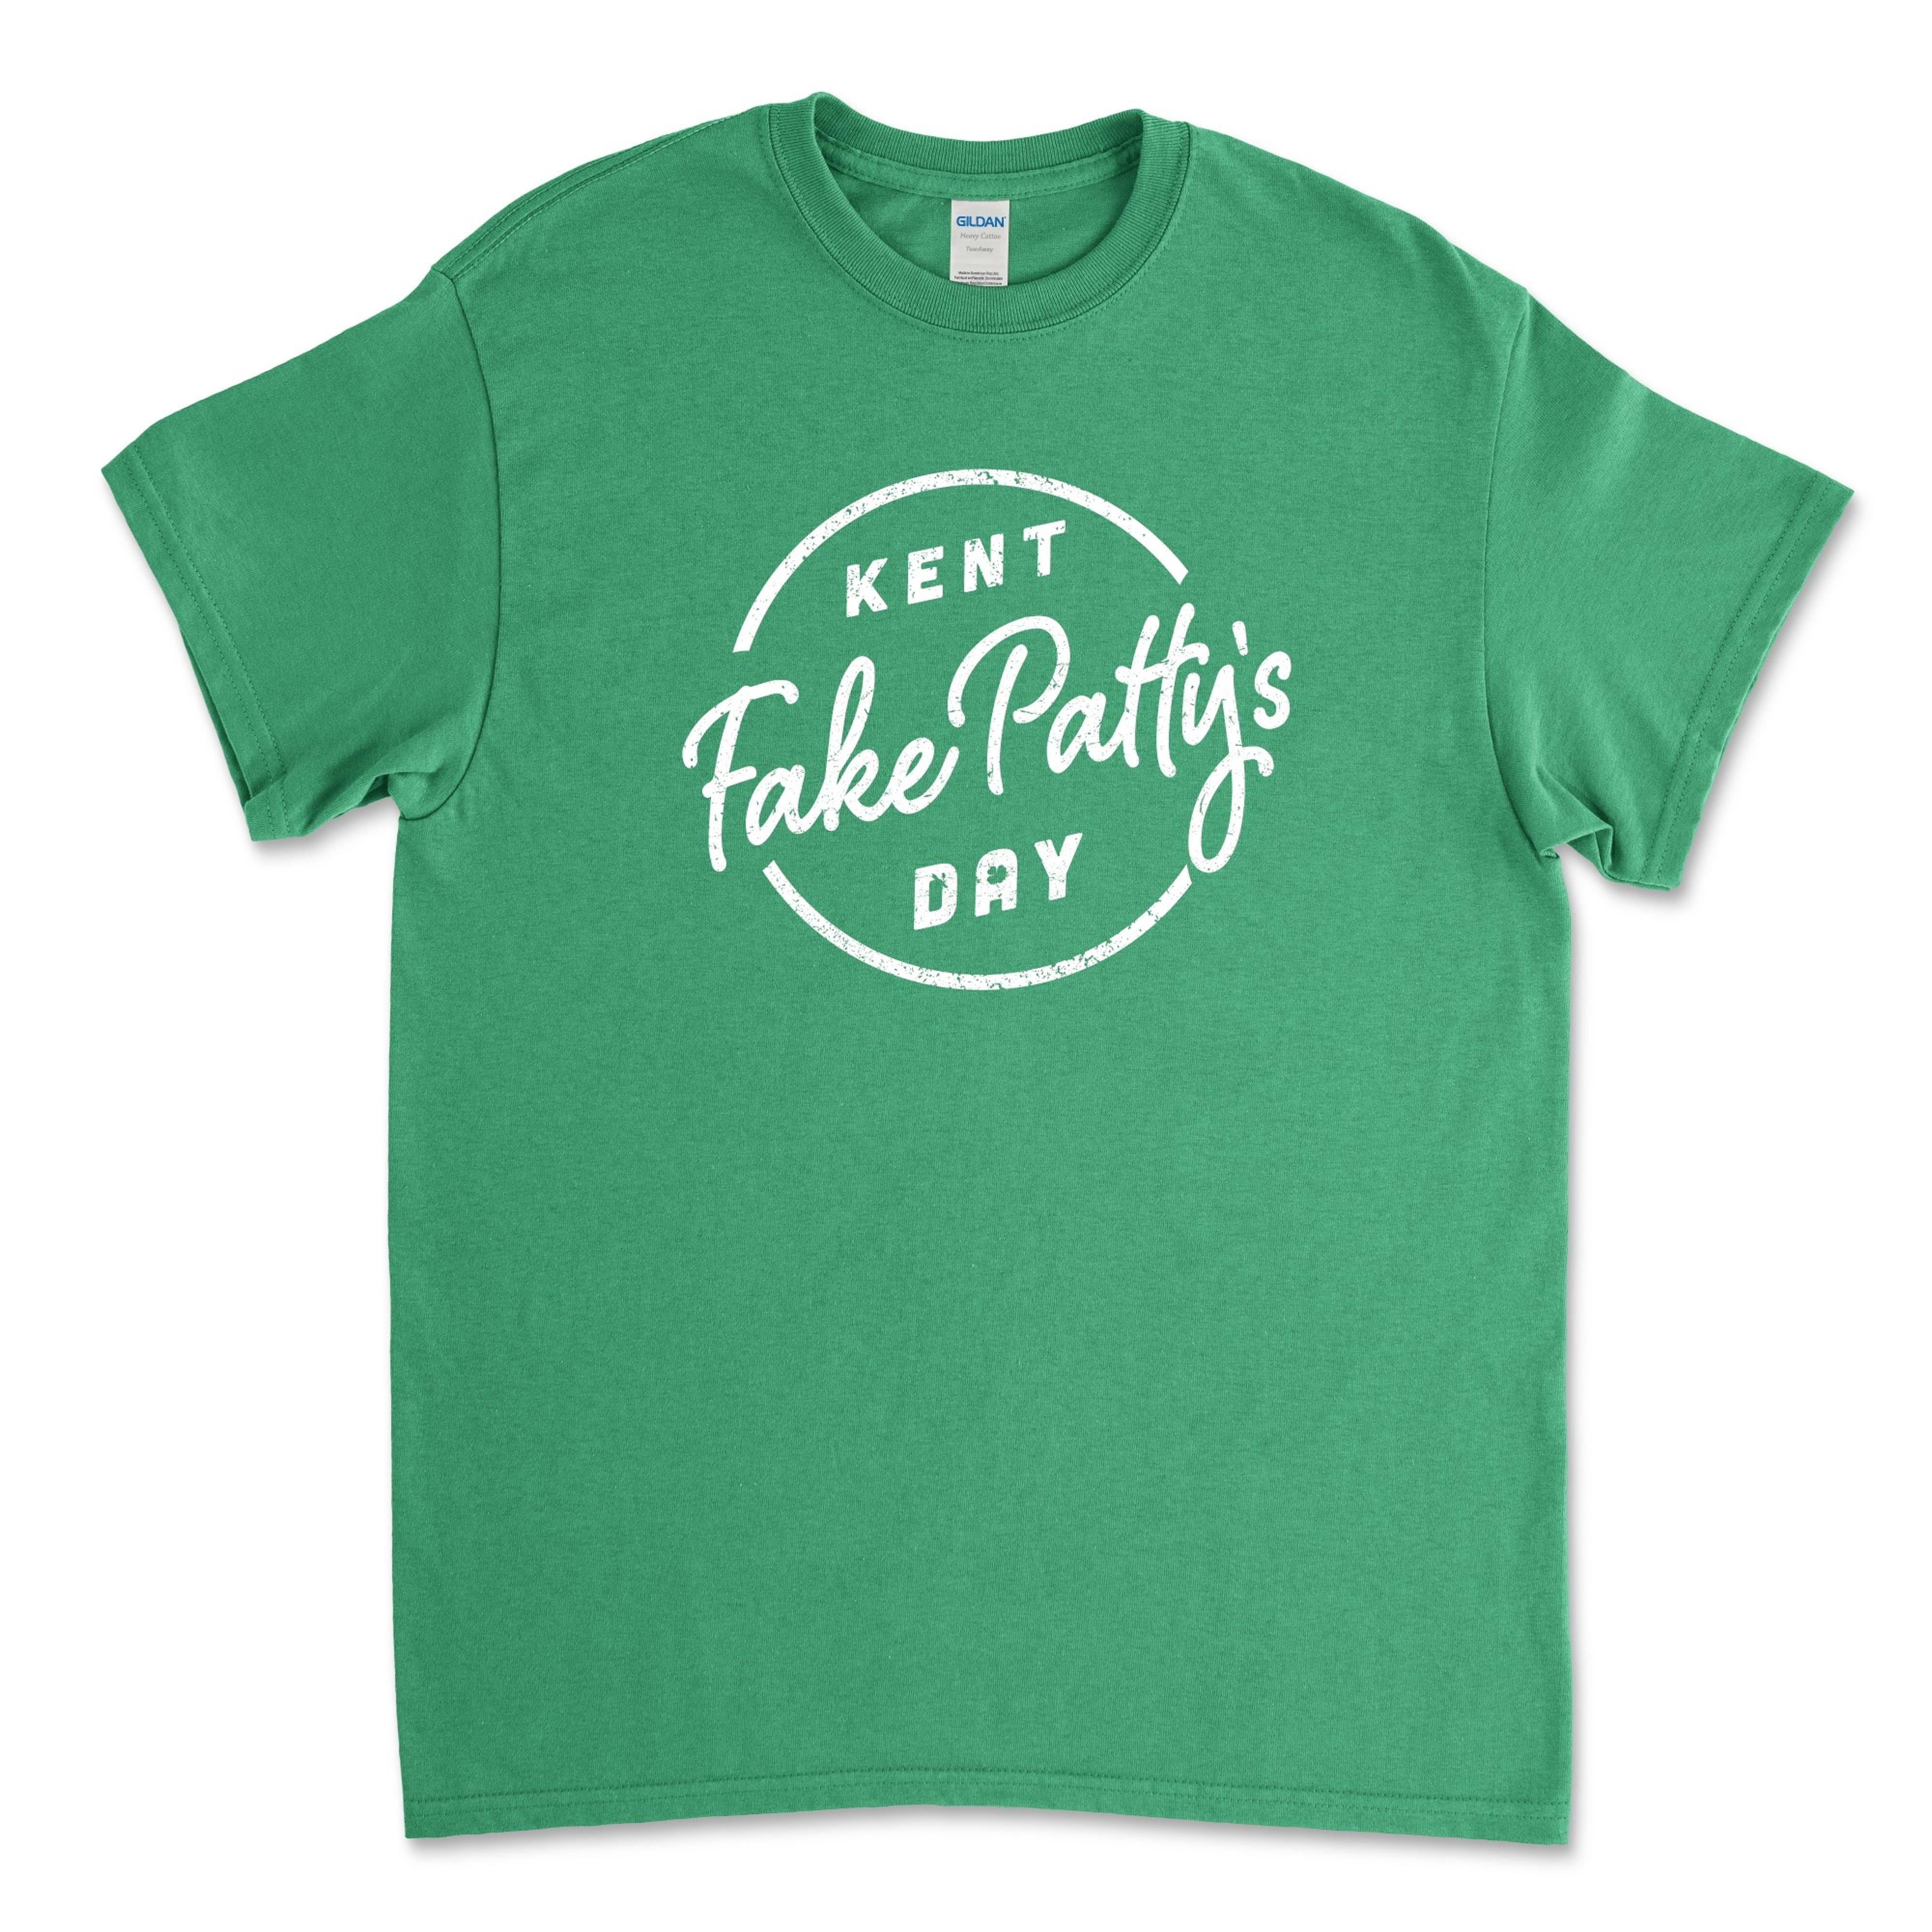 Kent Fake Pattys Day Kel T-Shirt